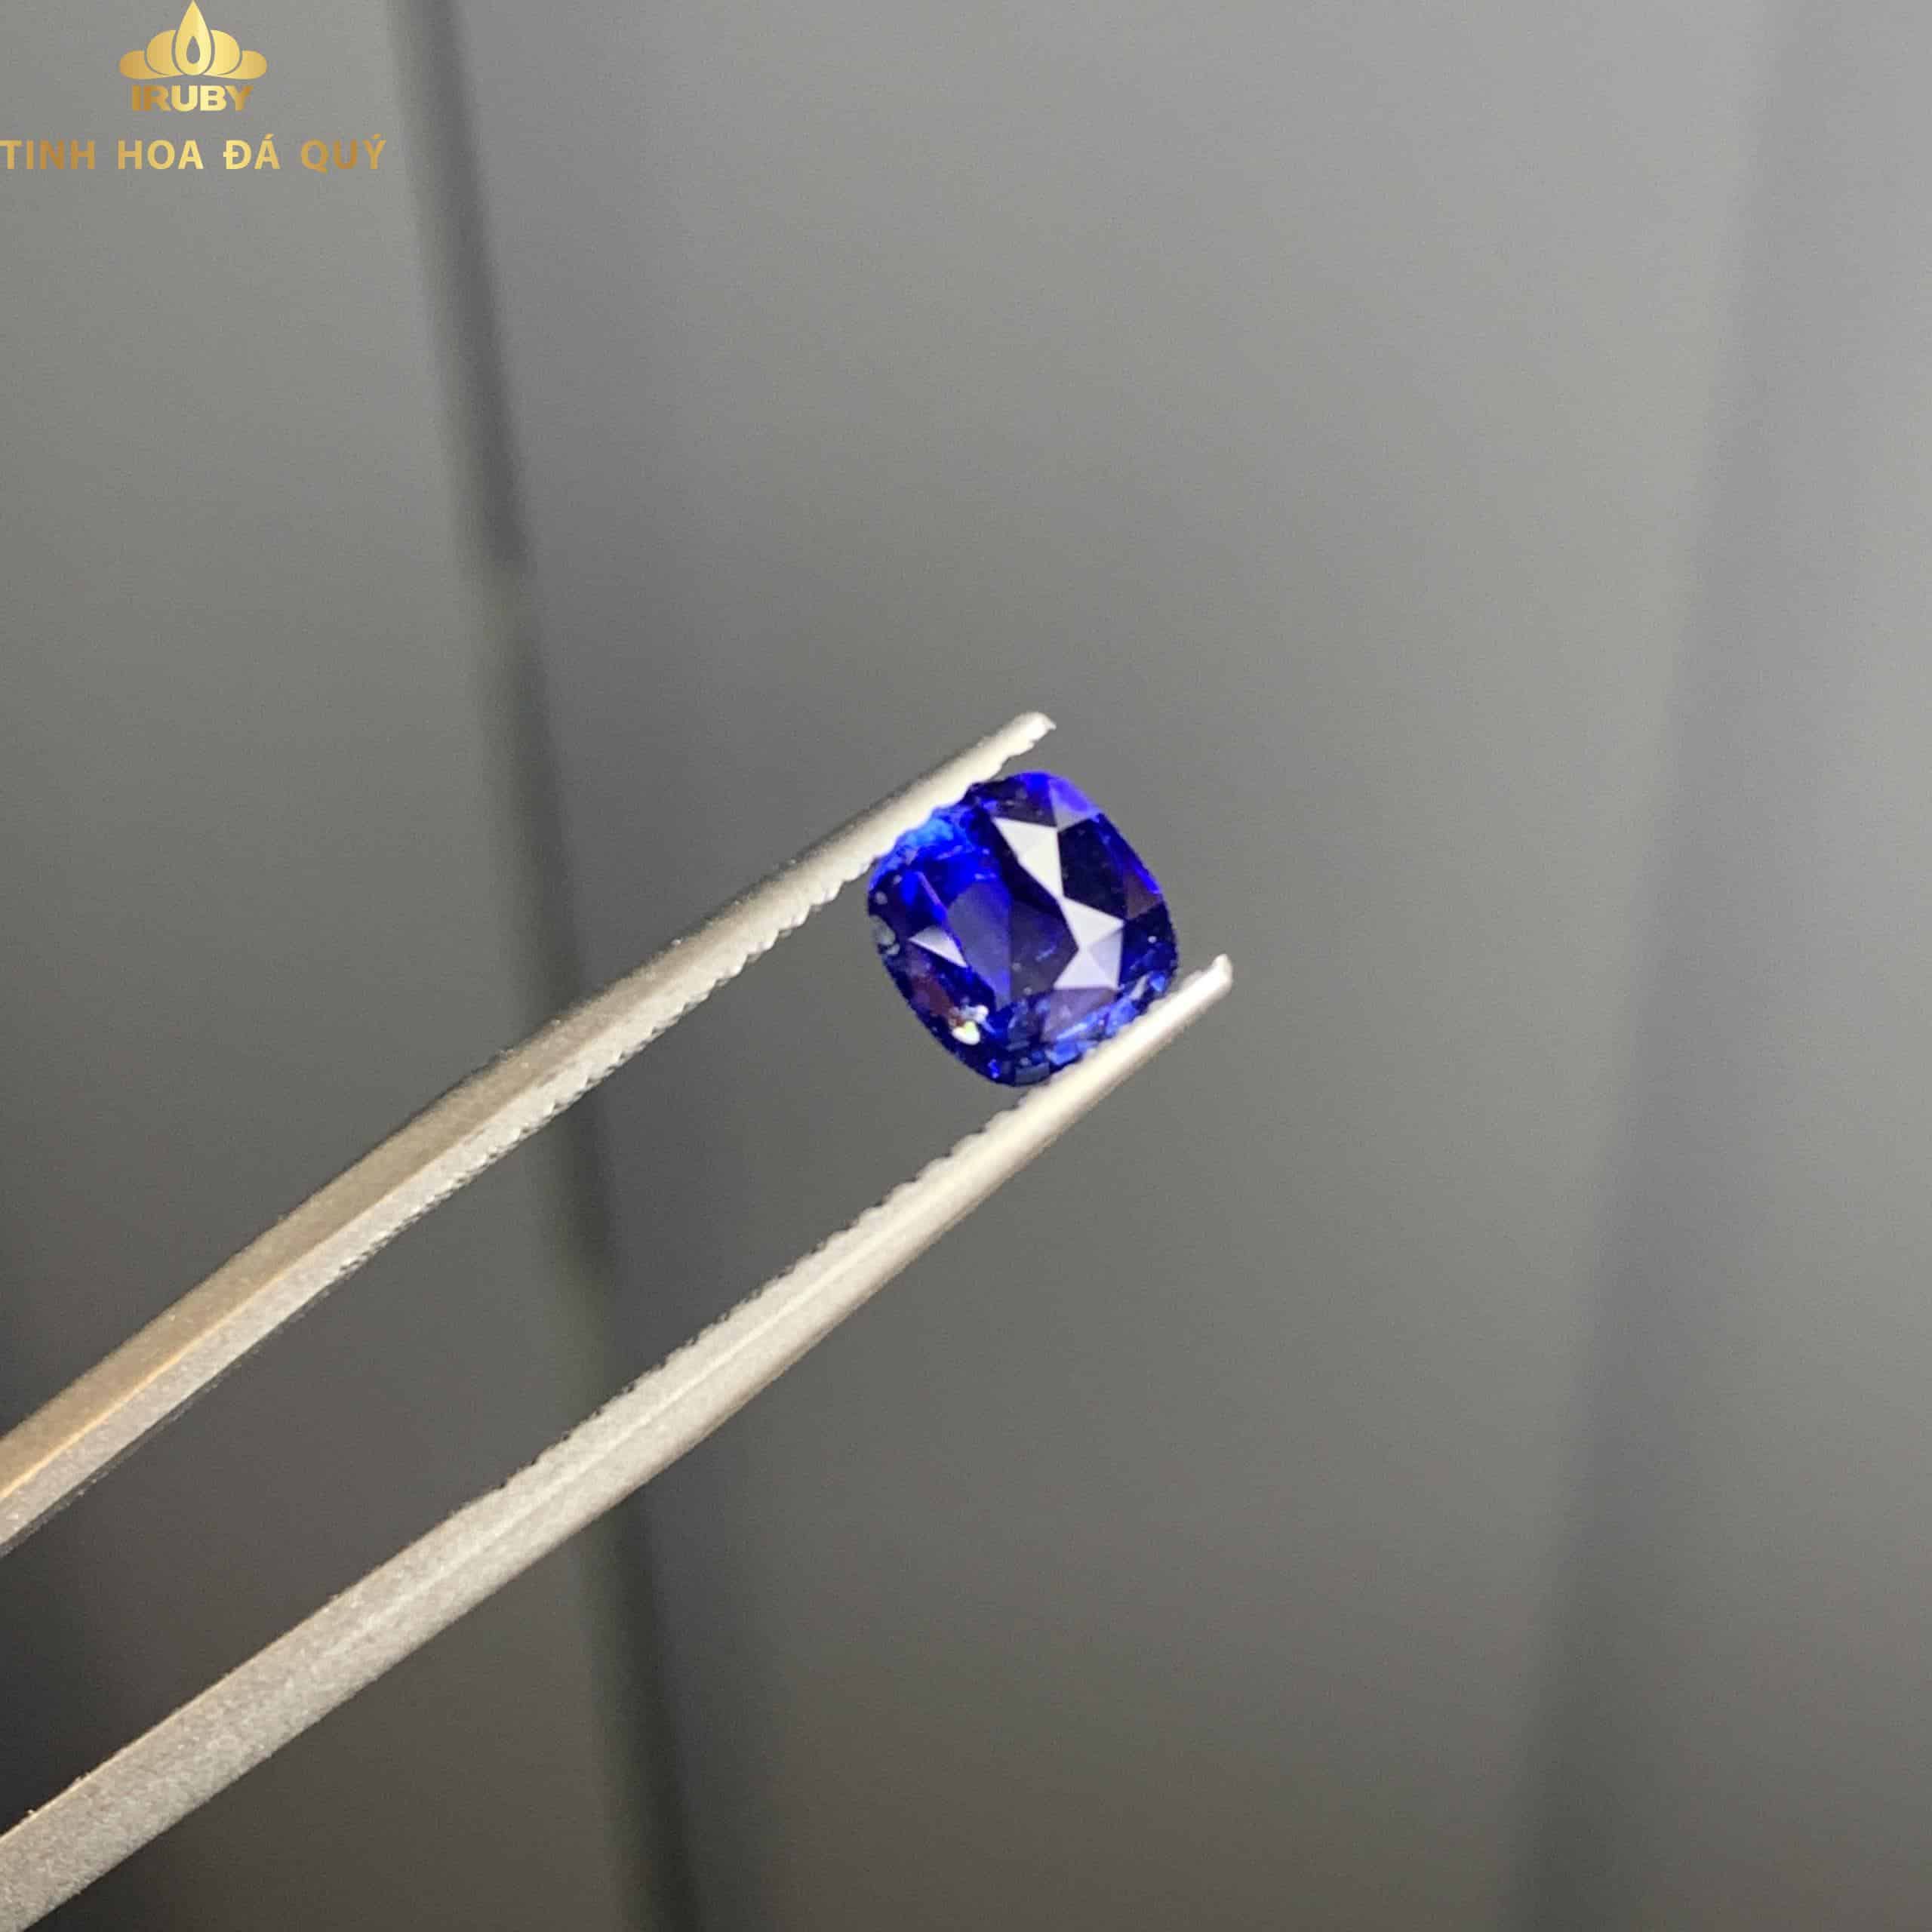 Viên Sapphire xanh lam siêu net 1,1ct hình 1